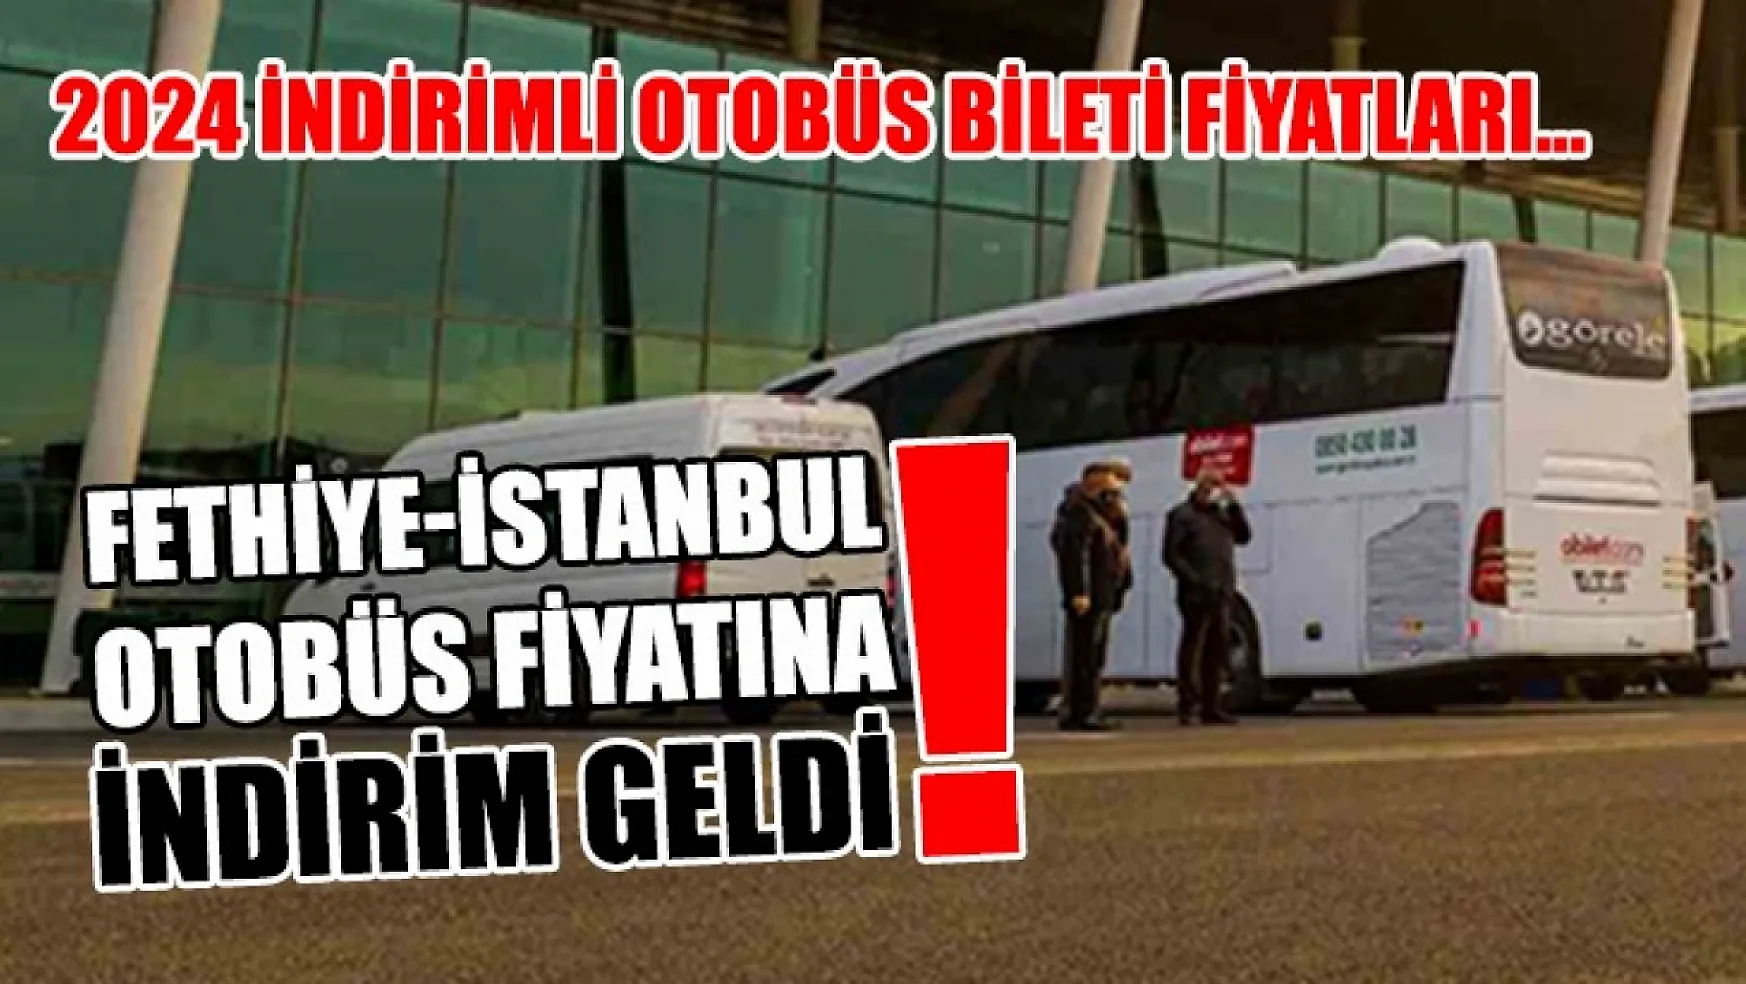 Fethiye-İstanbul otobüs fiyatına indirim geldi! 2024 indirimli otobüs bileti fiyatları…